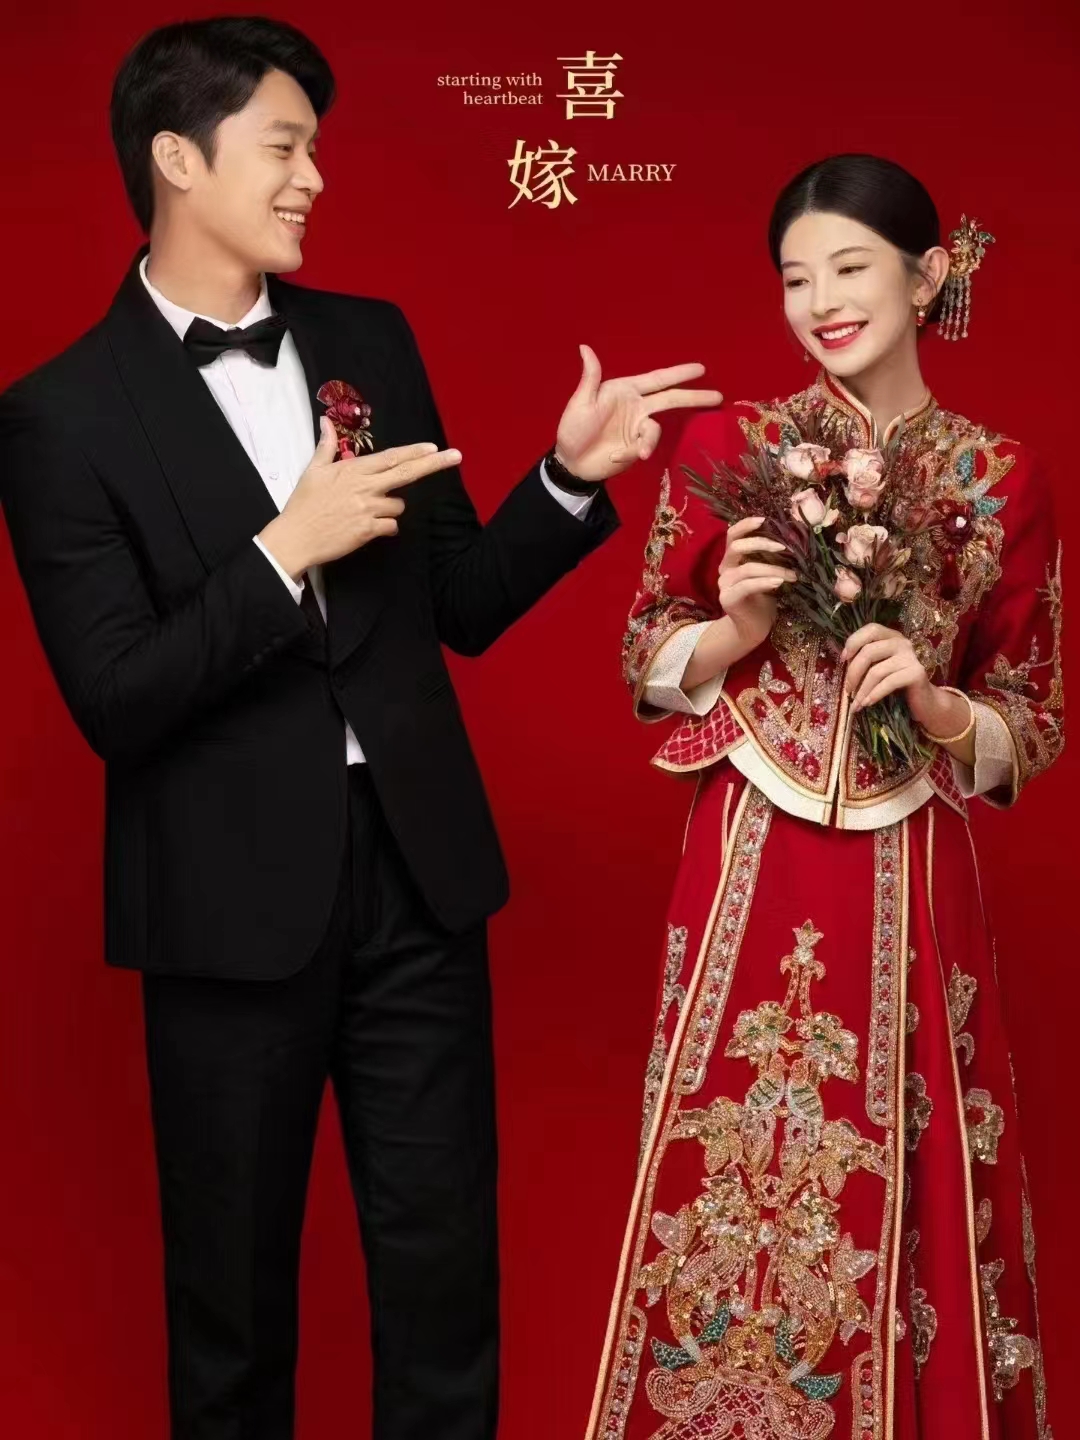 夏季福利 | 父母喜爱的中式喜嫁婚纱照